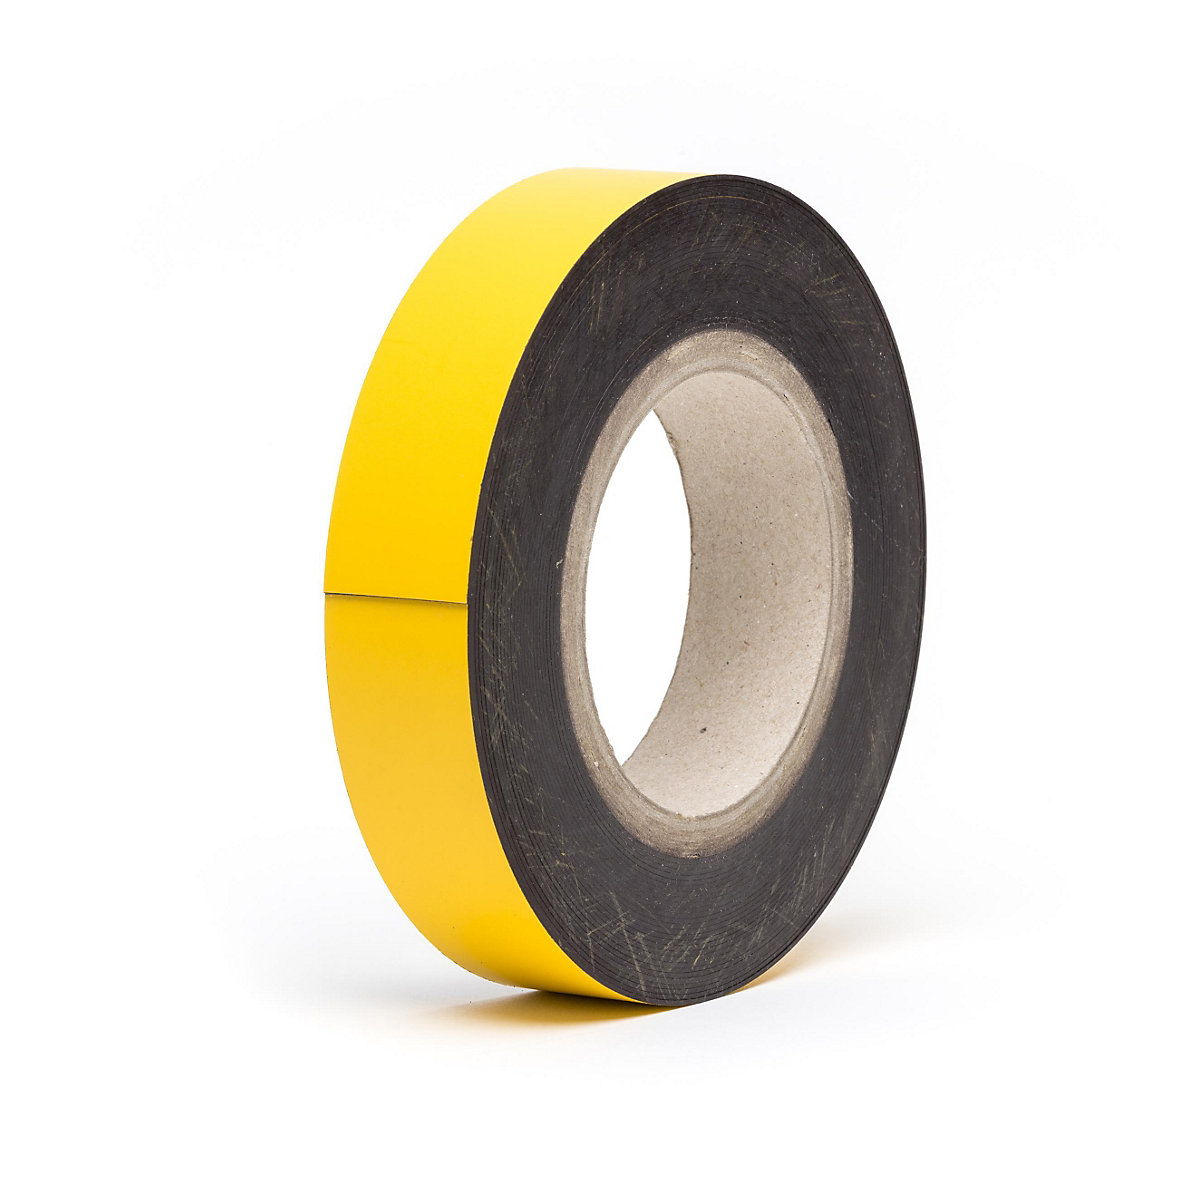 Magnetne skladišne pločice, u roli, u žutoj boji, visina 30 mm, dužina role 10 m-17